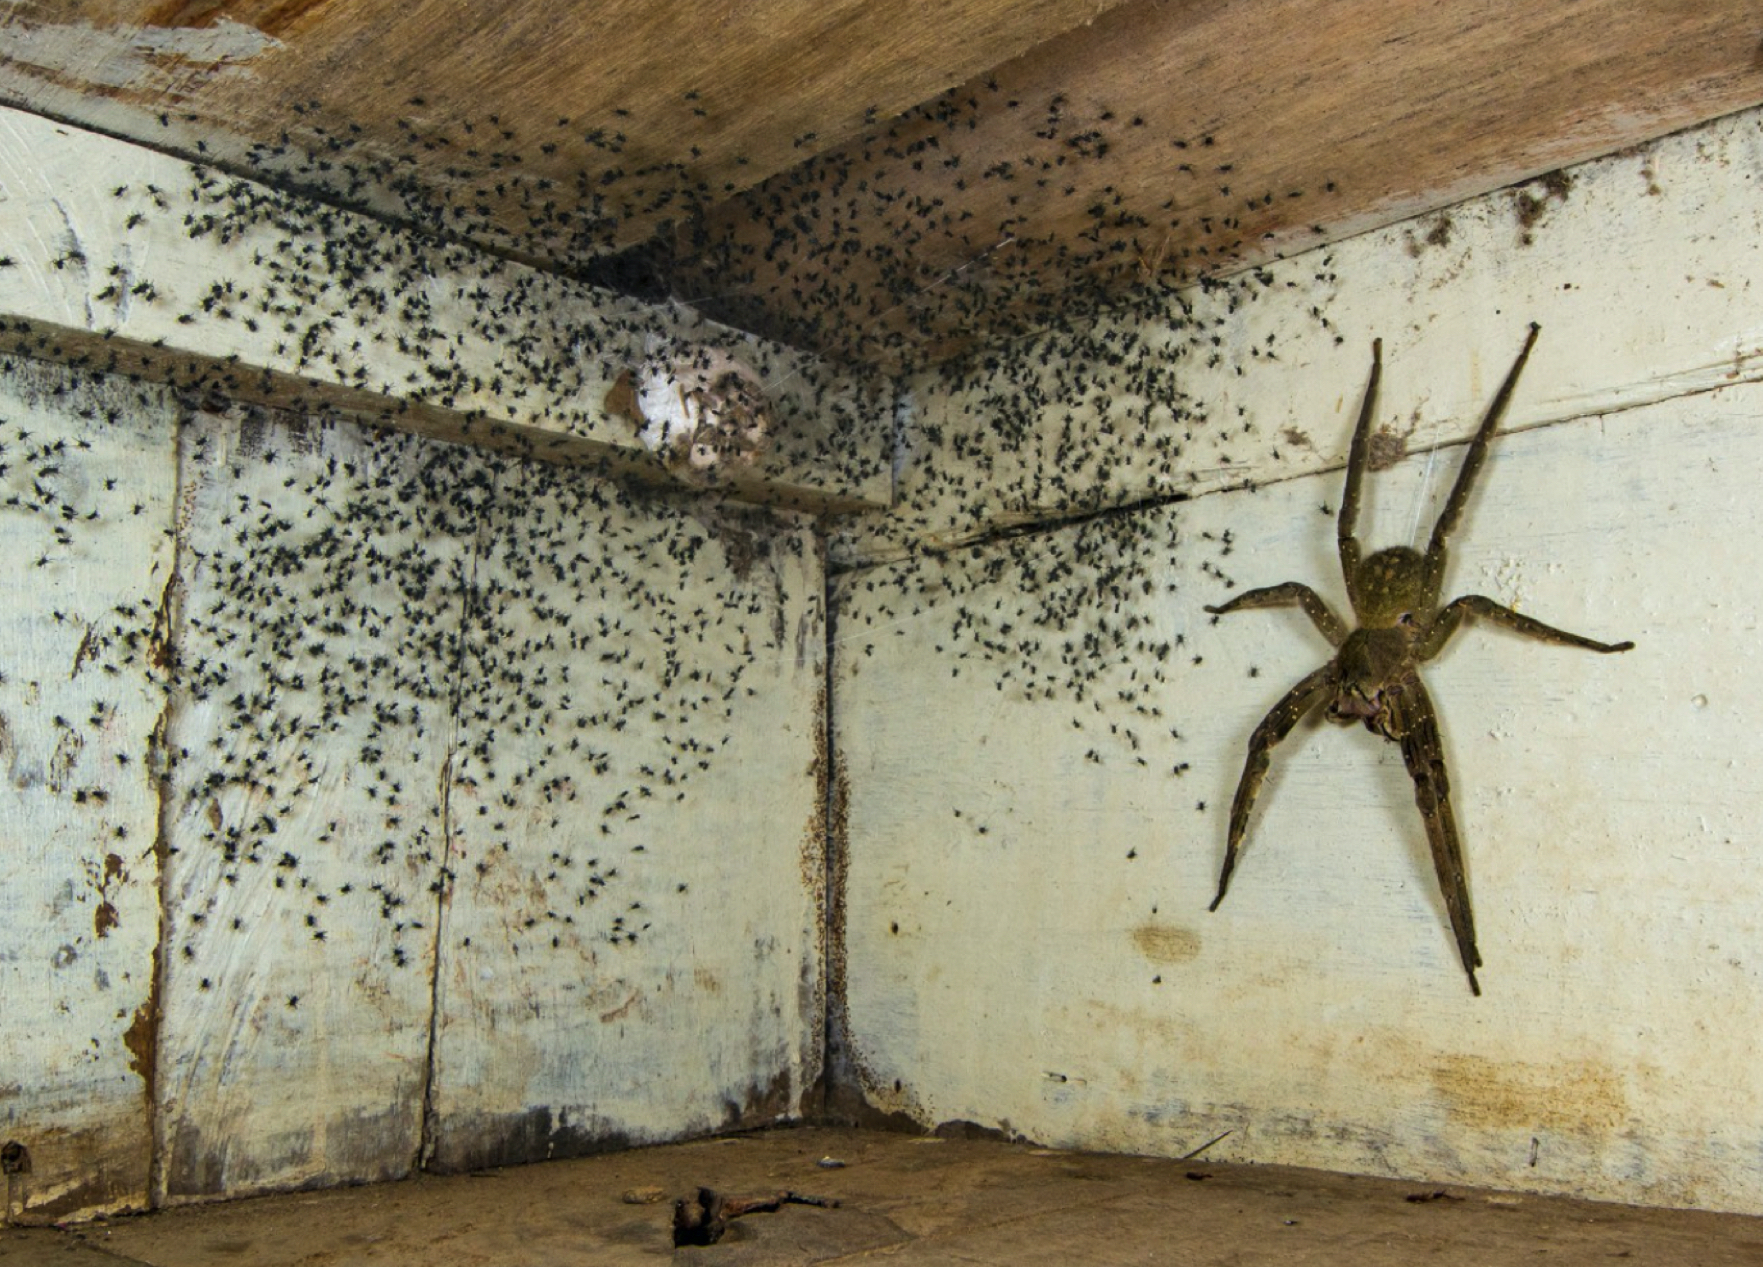 Lelaki Terperanjat Menemui Labah-labah Besar Berbisa Di Bawah Katilnya Bersama Dengan Ribuan Labah-labah Kecil - nangtime.com